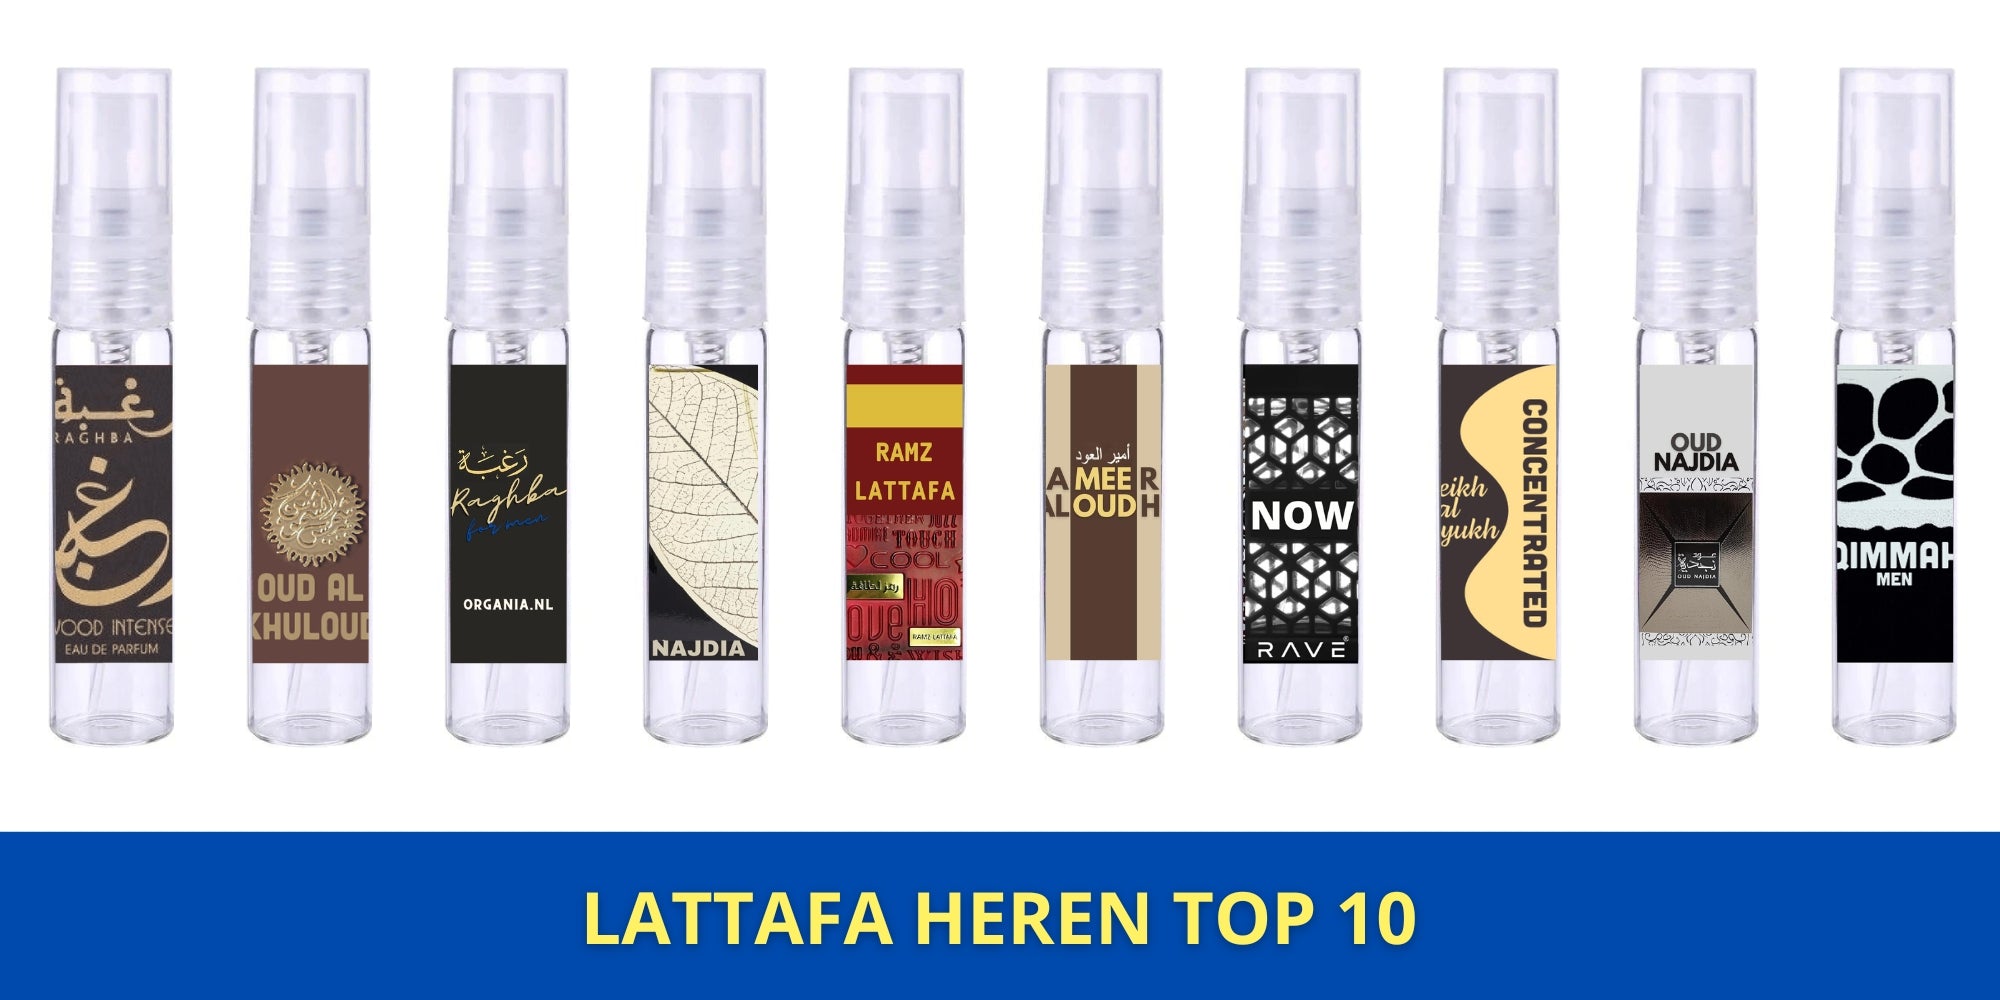 Lattafa Top 10 Heren Sample Set - Lattafa